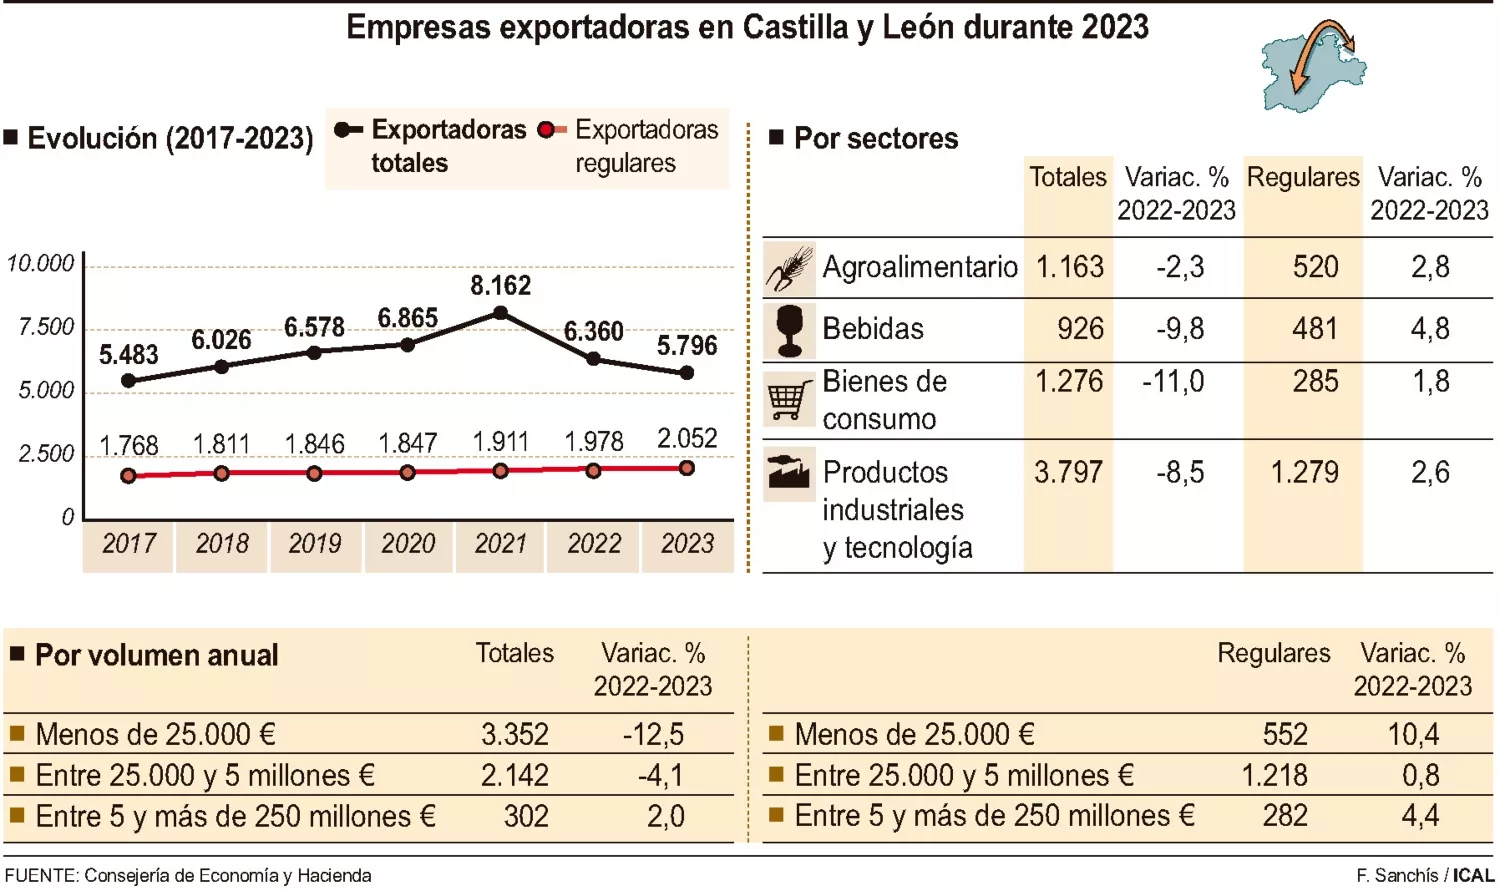 Grafico empresas exportadoras en Castilla y León en 2023